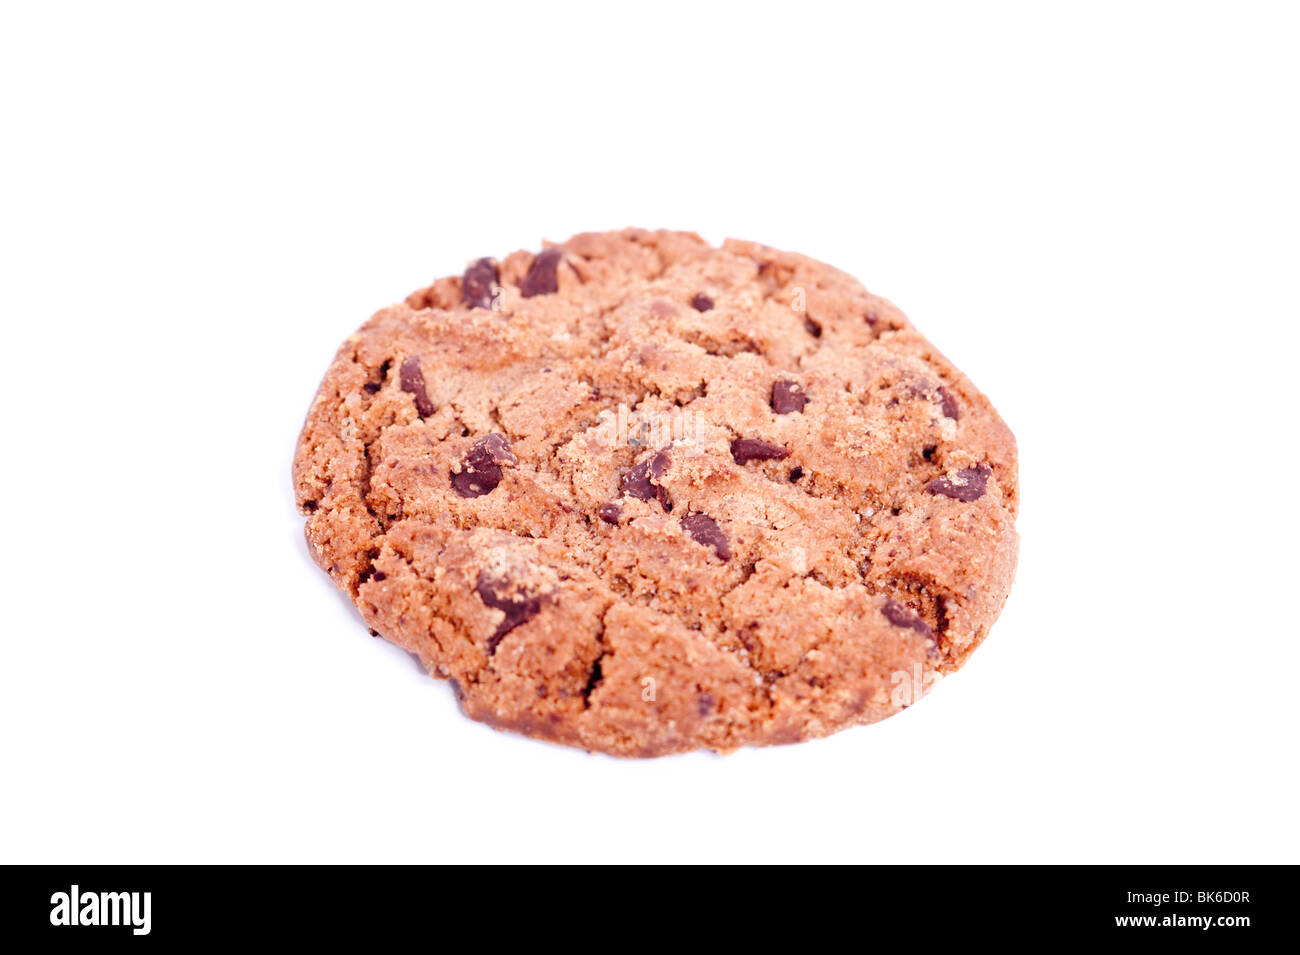 Un double chocolate cookie biscuit sur un fond blanc Banque D'Images